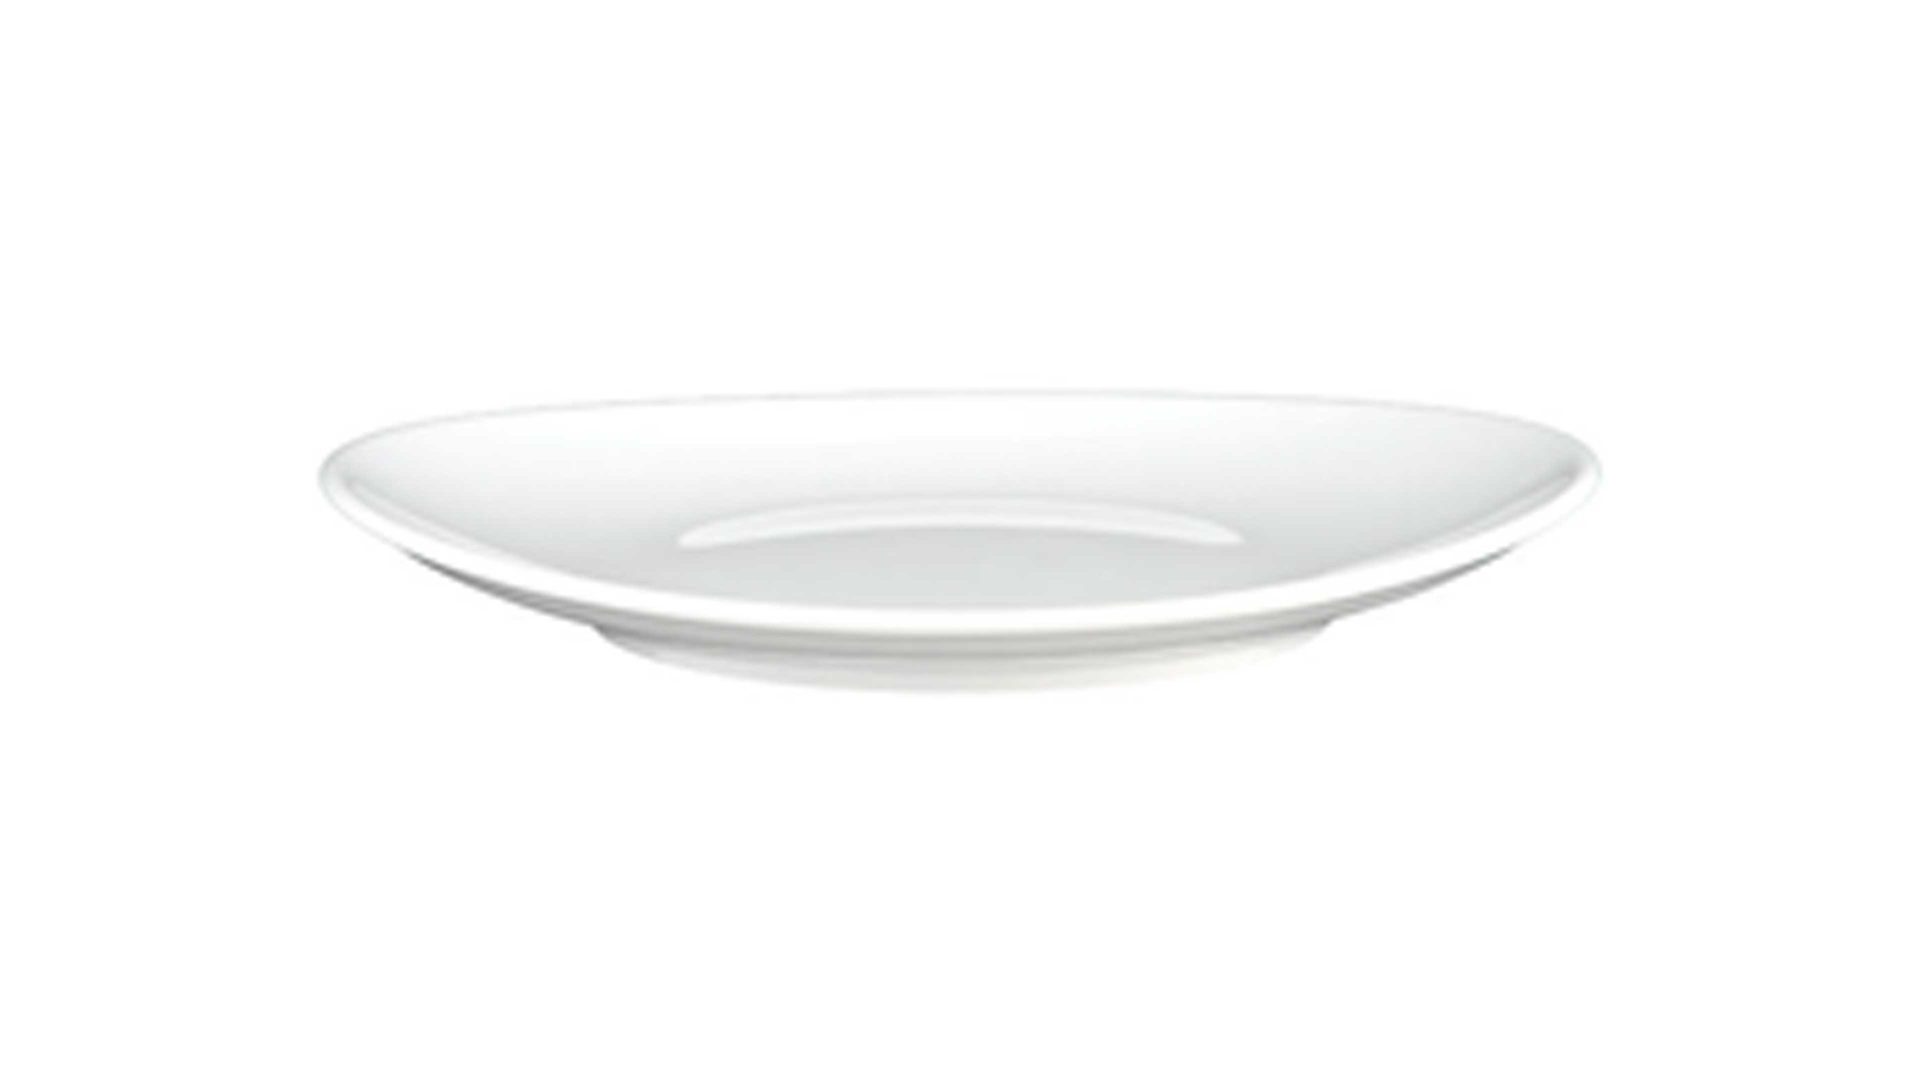 Essteller Seltmann aus Porzellan in Weiß Seltmann Porzellanserie Modern Life 6 – Speiseteller weißes Porzellan – Durchmesser ca. 26 cm